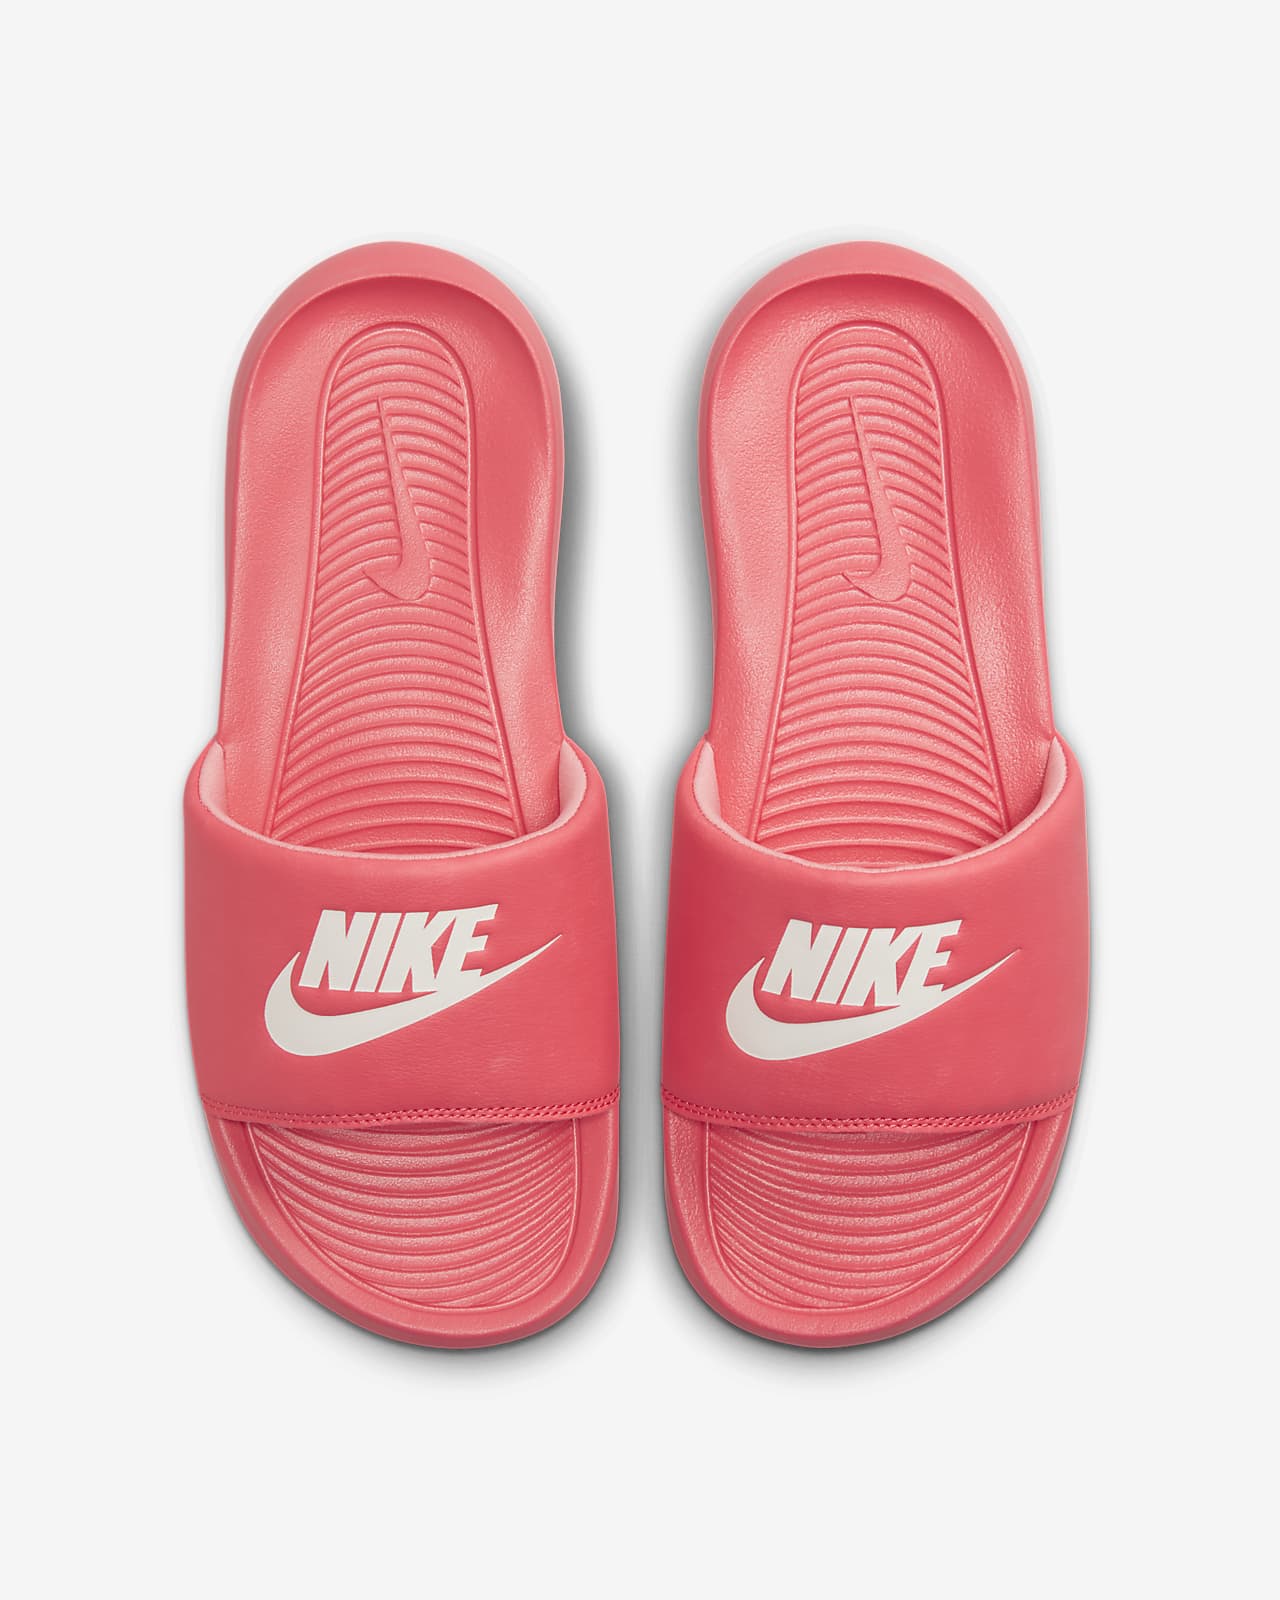 One Women's Slides. Nike